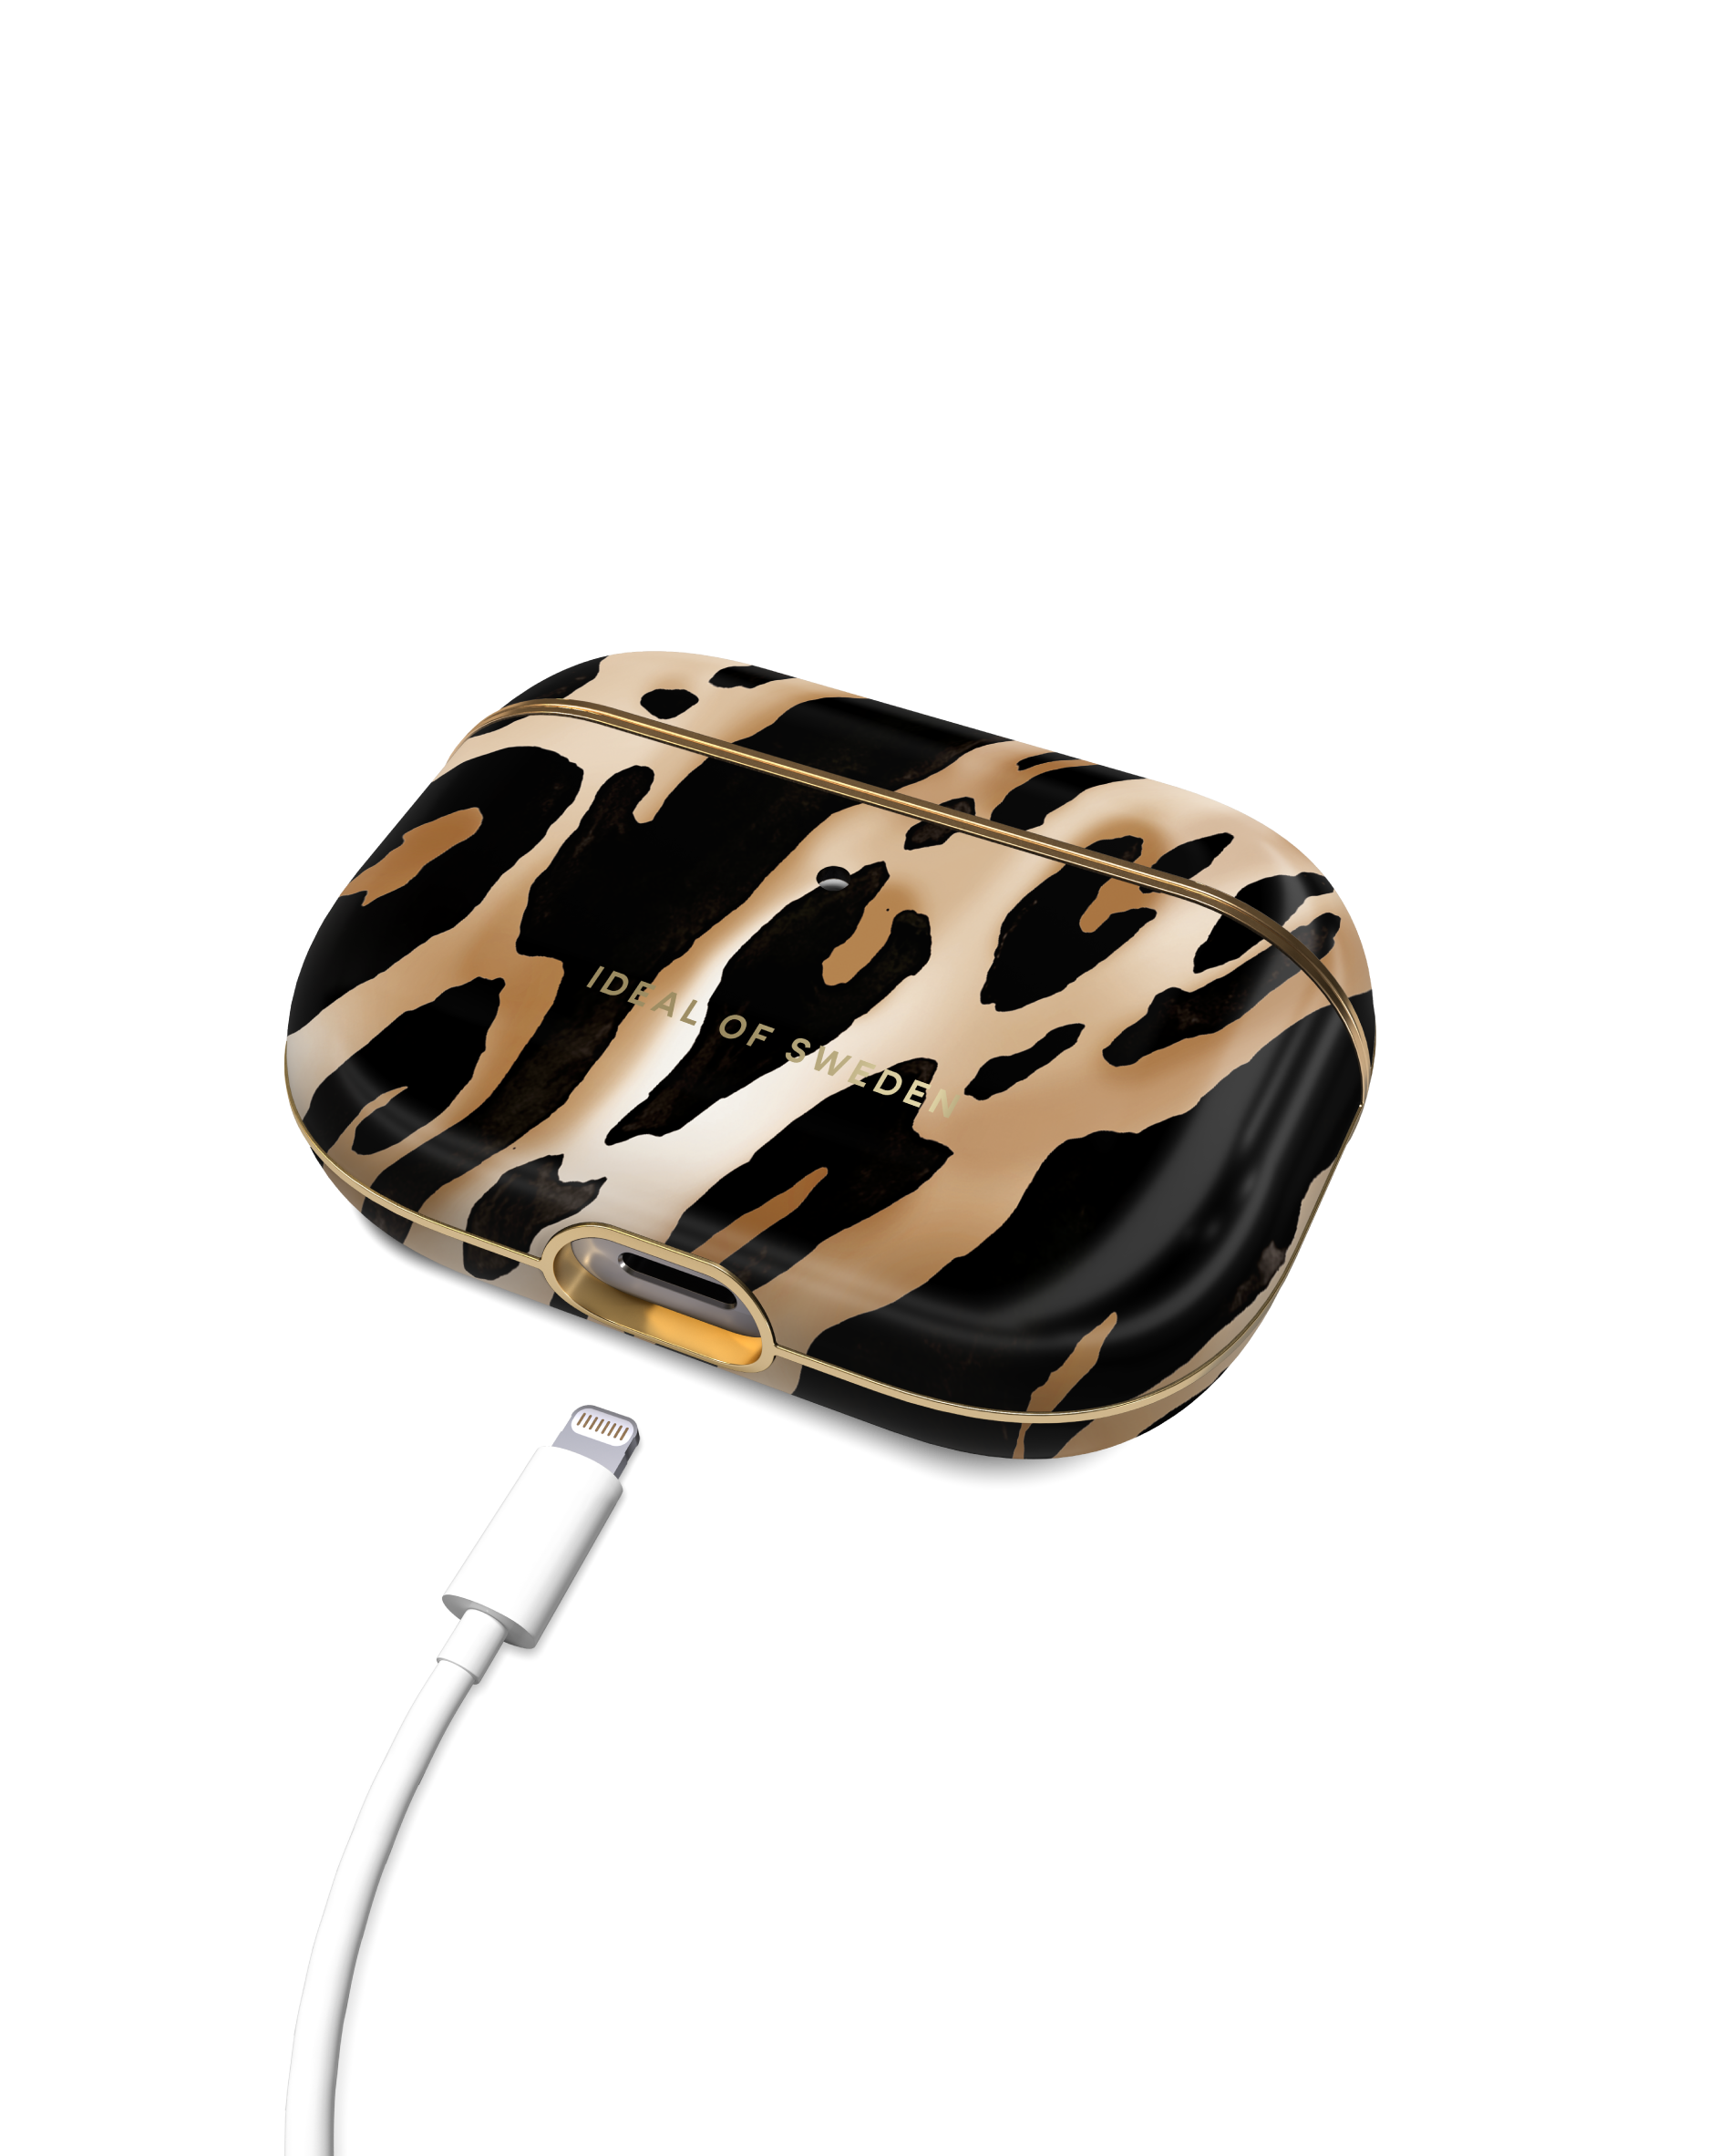 Iconic für: Schutzhülle Leopard OF SWEDEN IDEAL Apple passend IDFAPCAW21-PRO-356